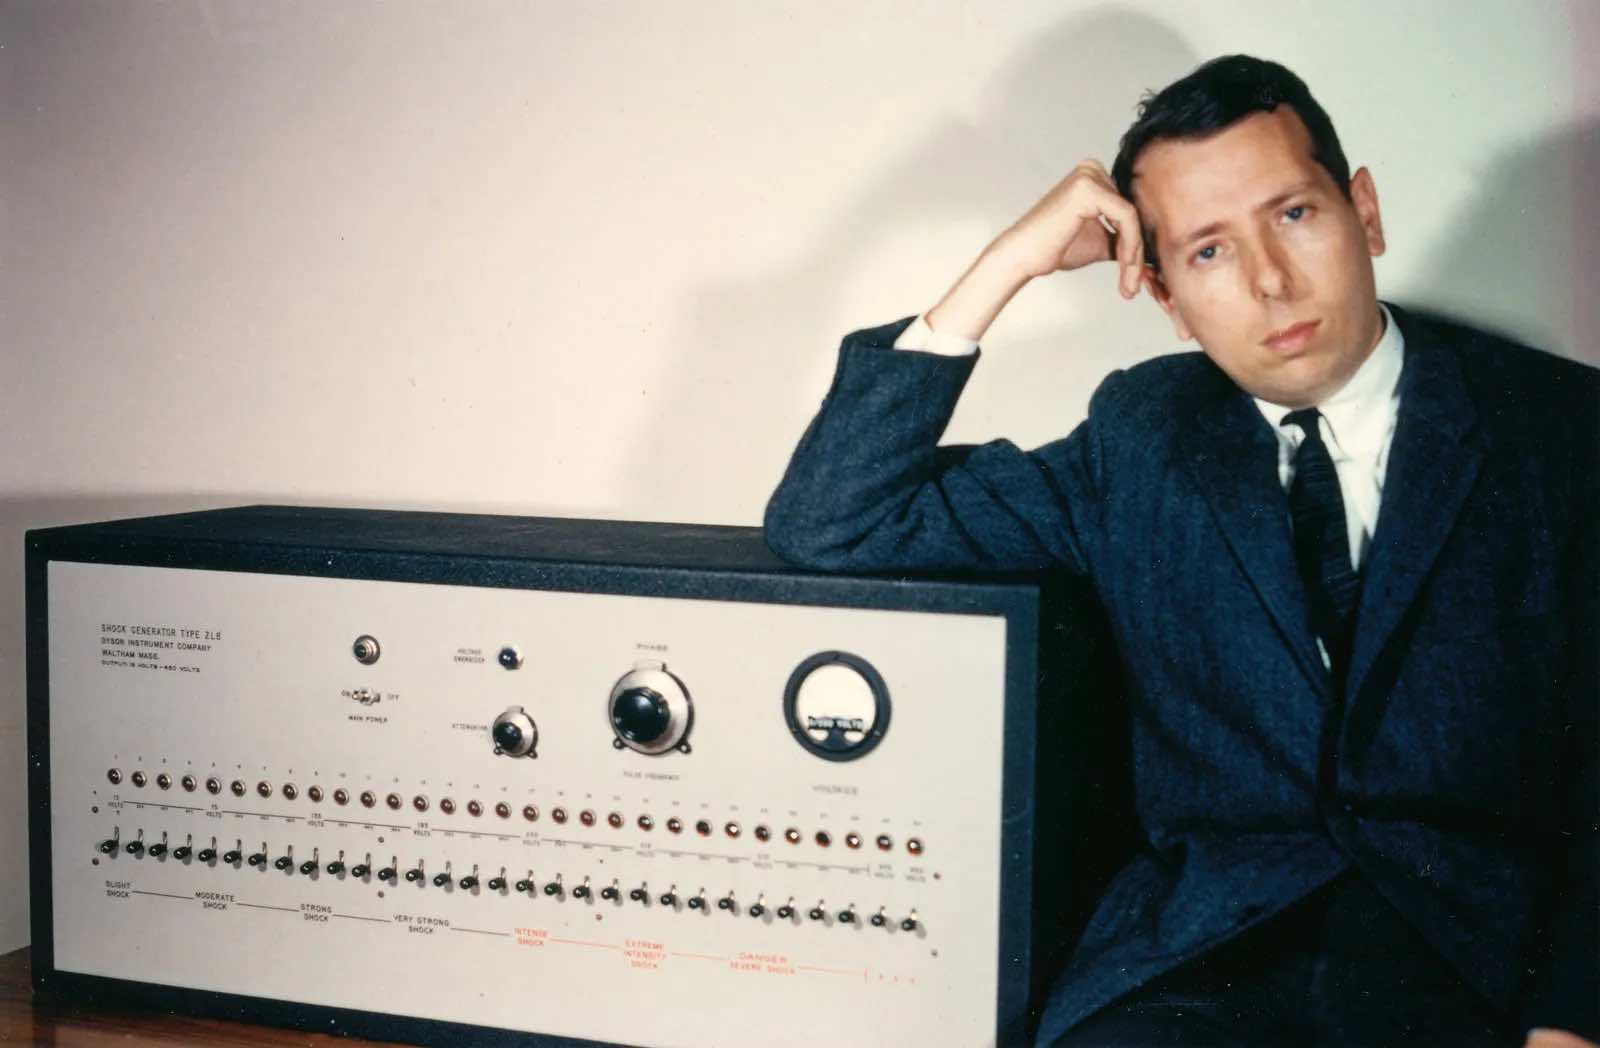 Stanley Milgram with shock generator